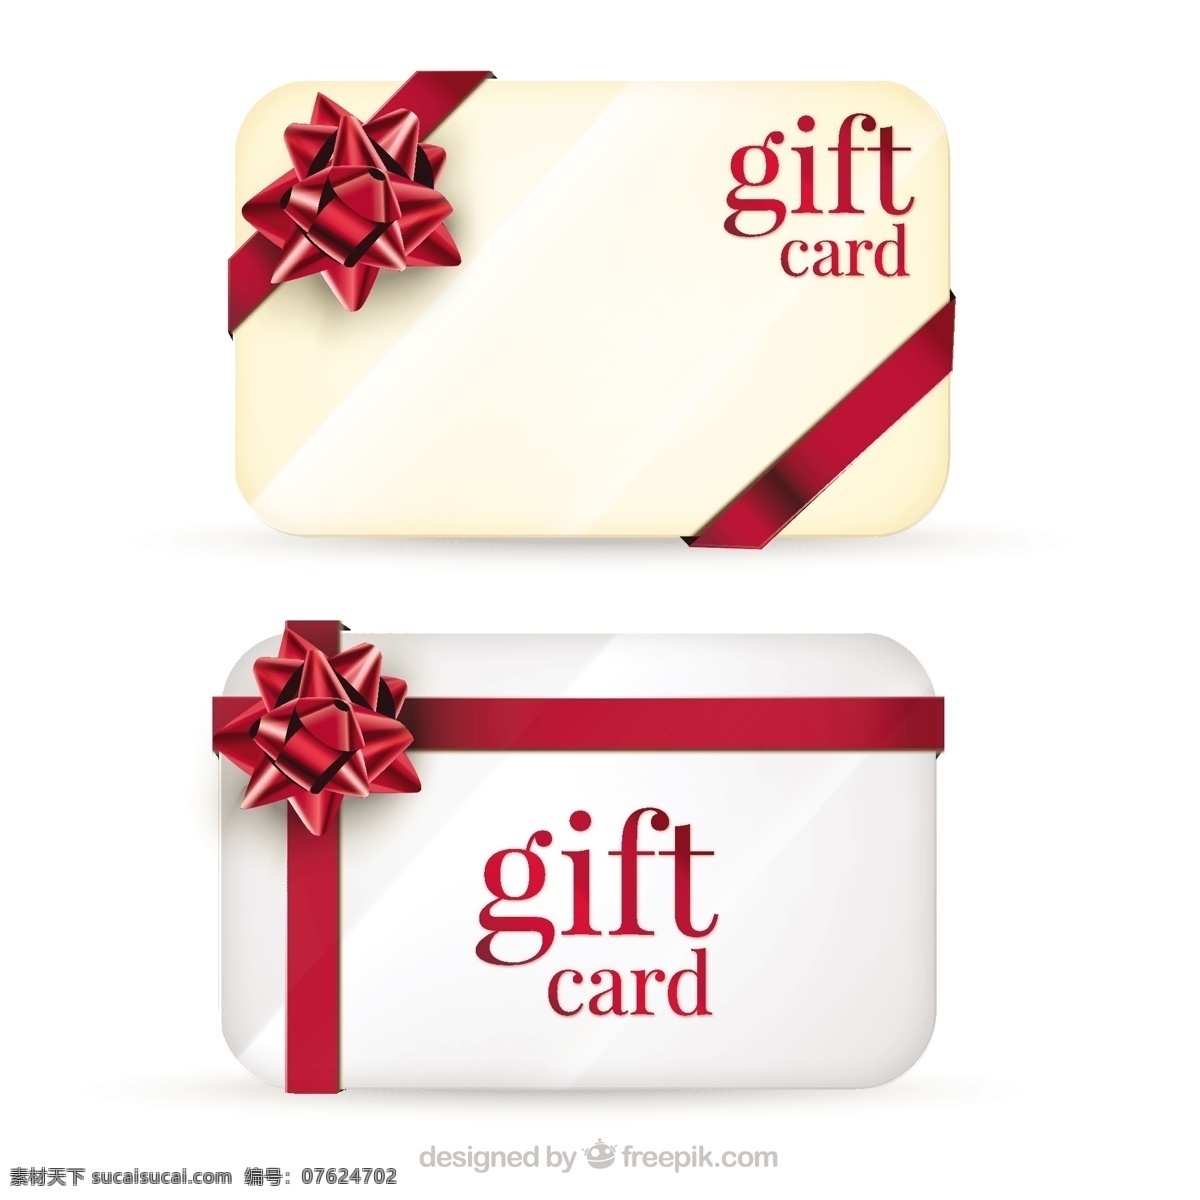 礼品卡模板 织带 生日 礼品 红色 优惠券 周年 目前 生日卡 丝带 彩带